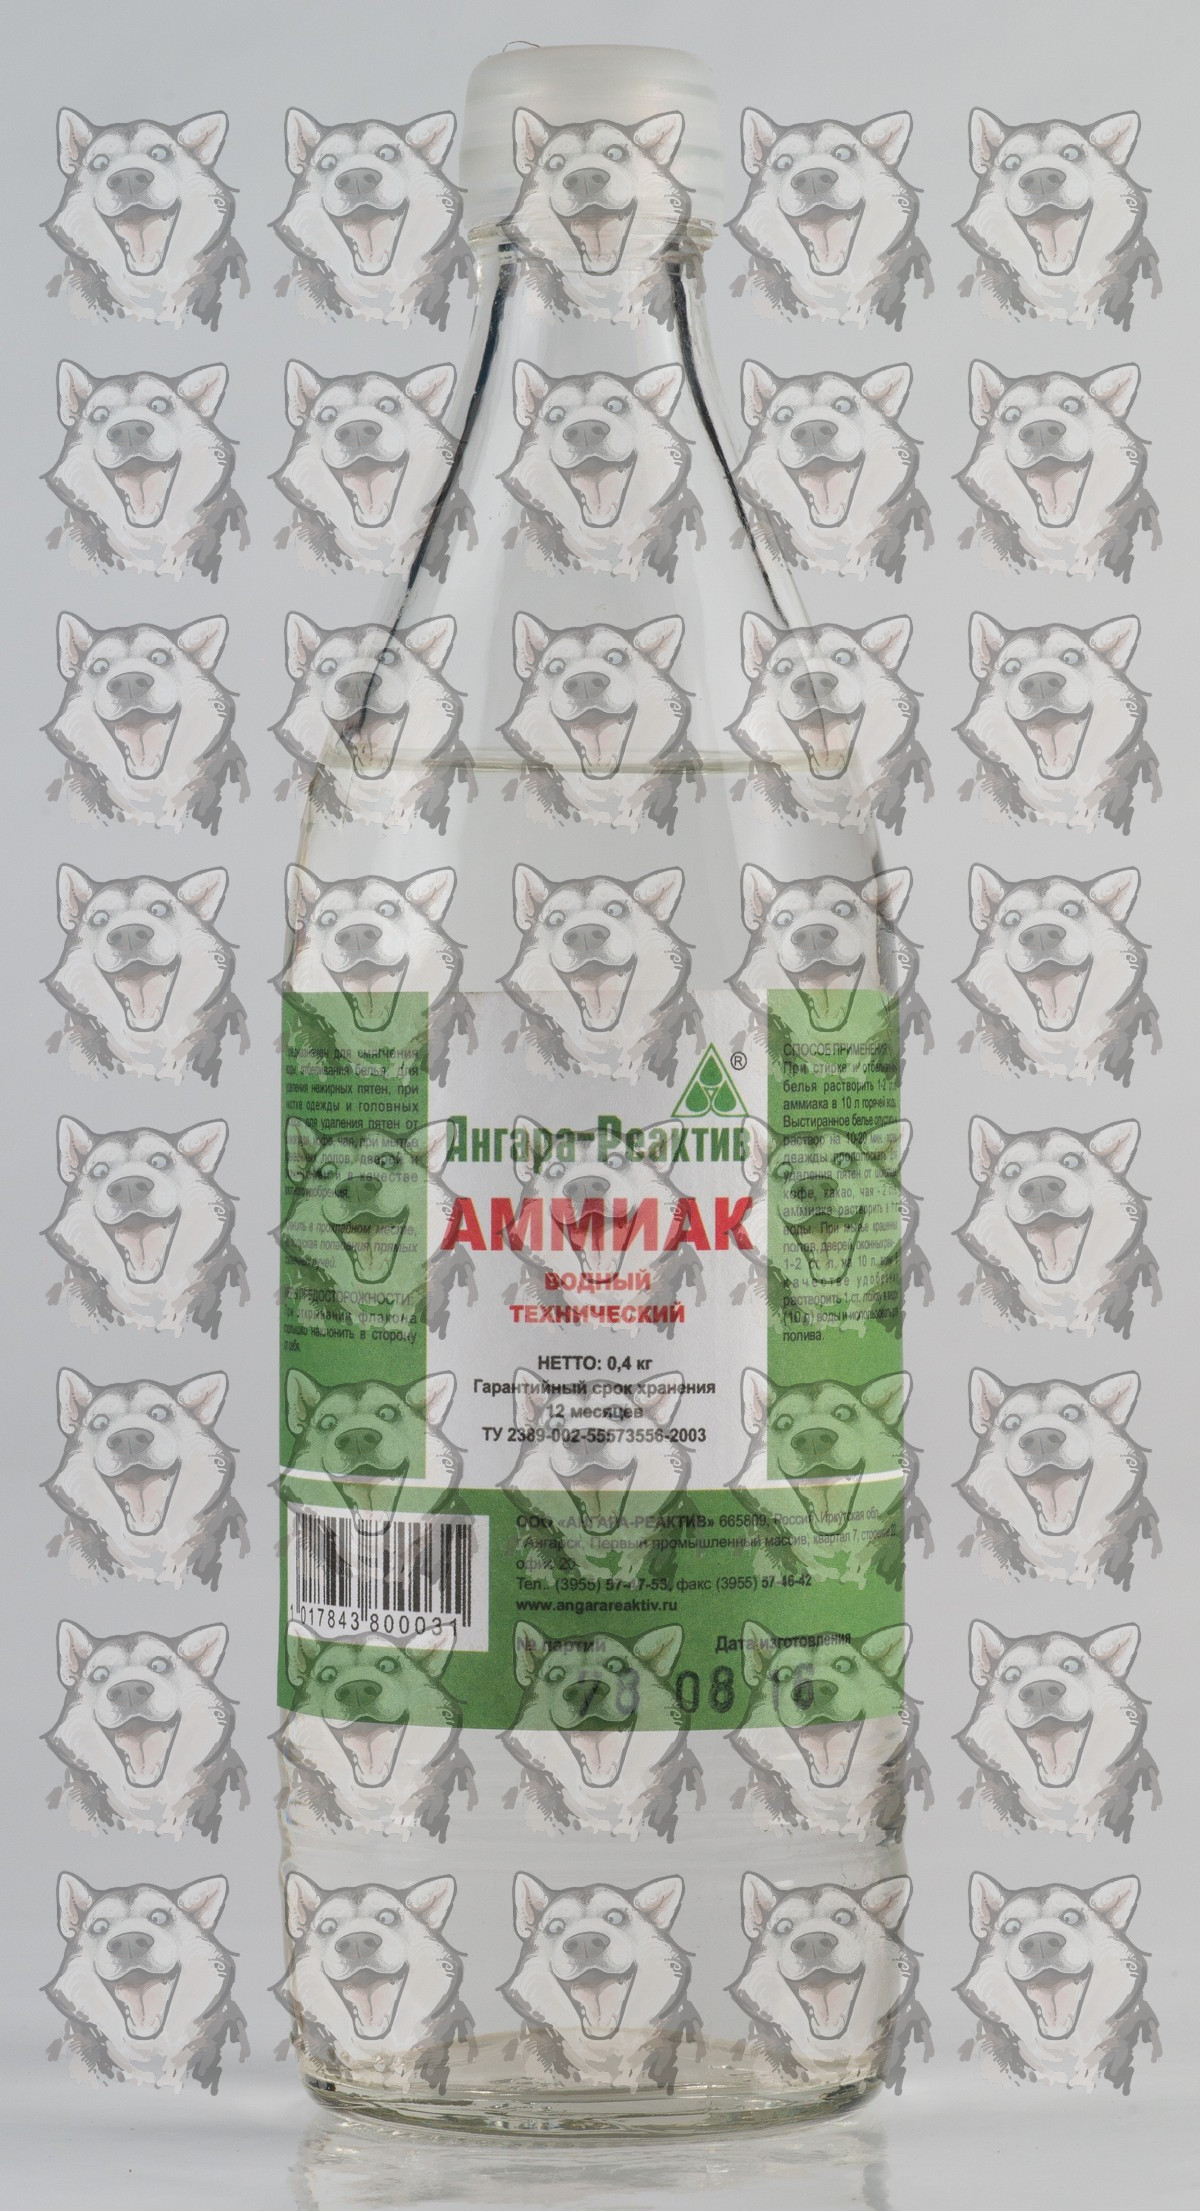 Аммиак Ангара-Реактив водный технический ГОСТ бутылка Стекло 0,5 л .